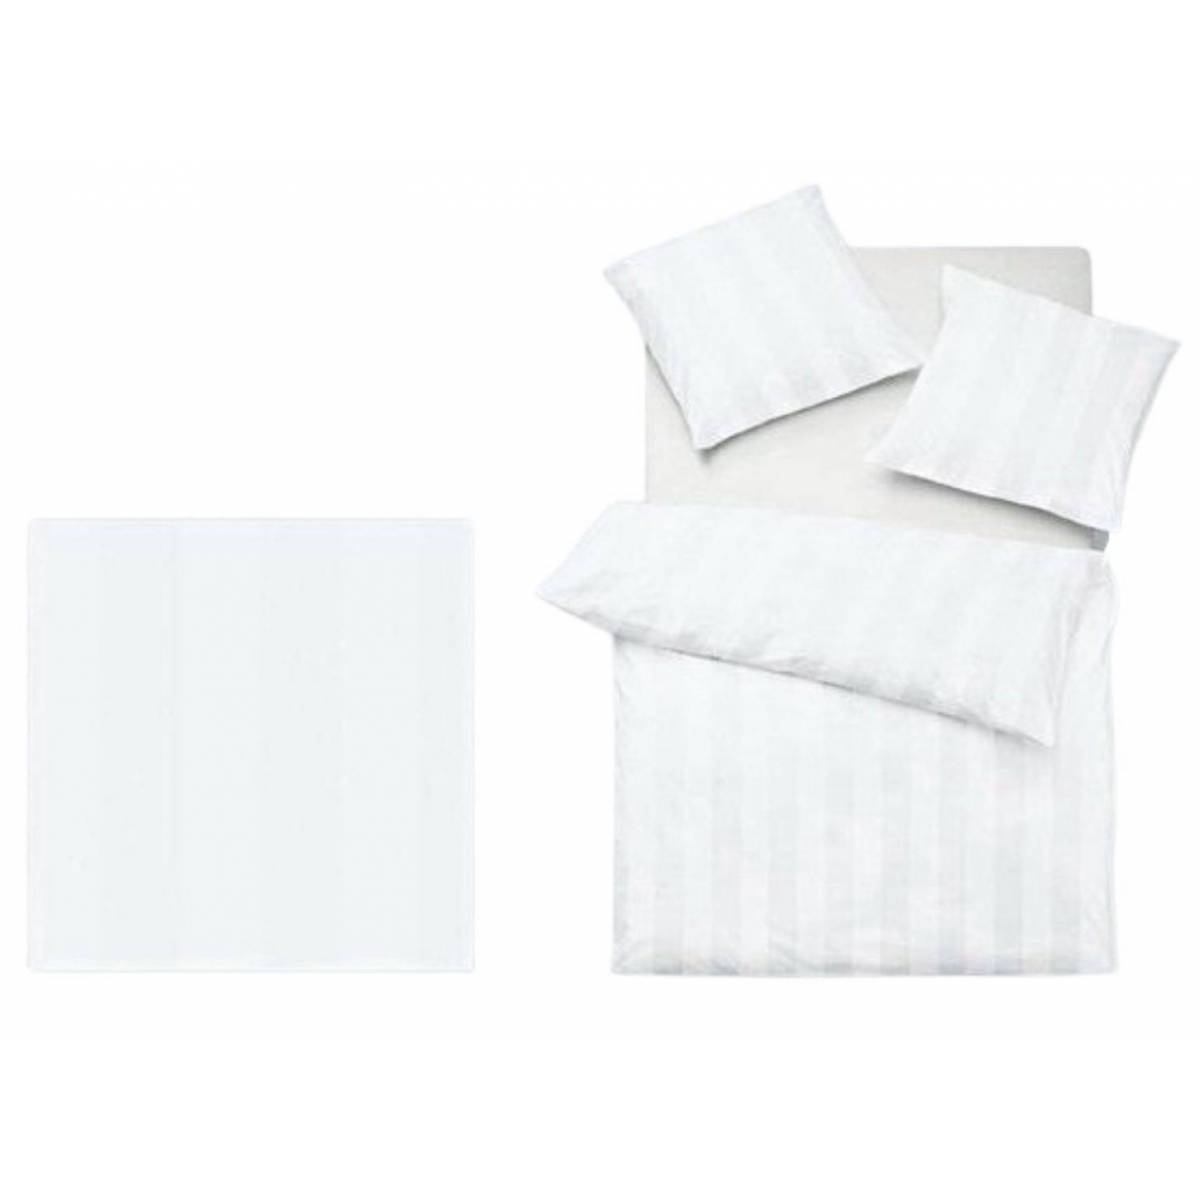 Duvet cover 140 x 200 cm White Victoria + Pillowcases